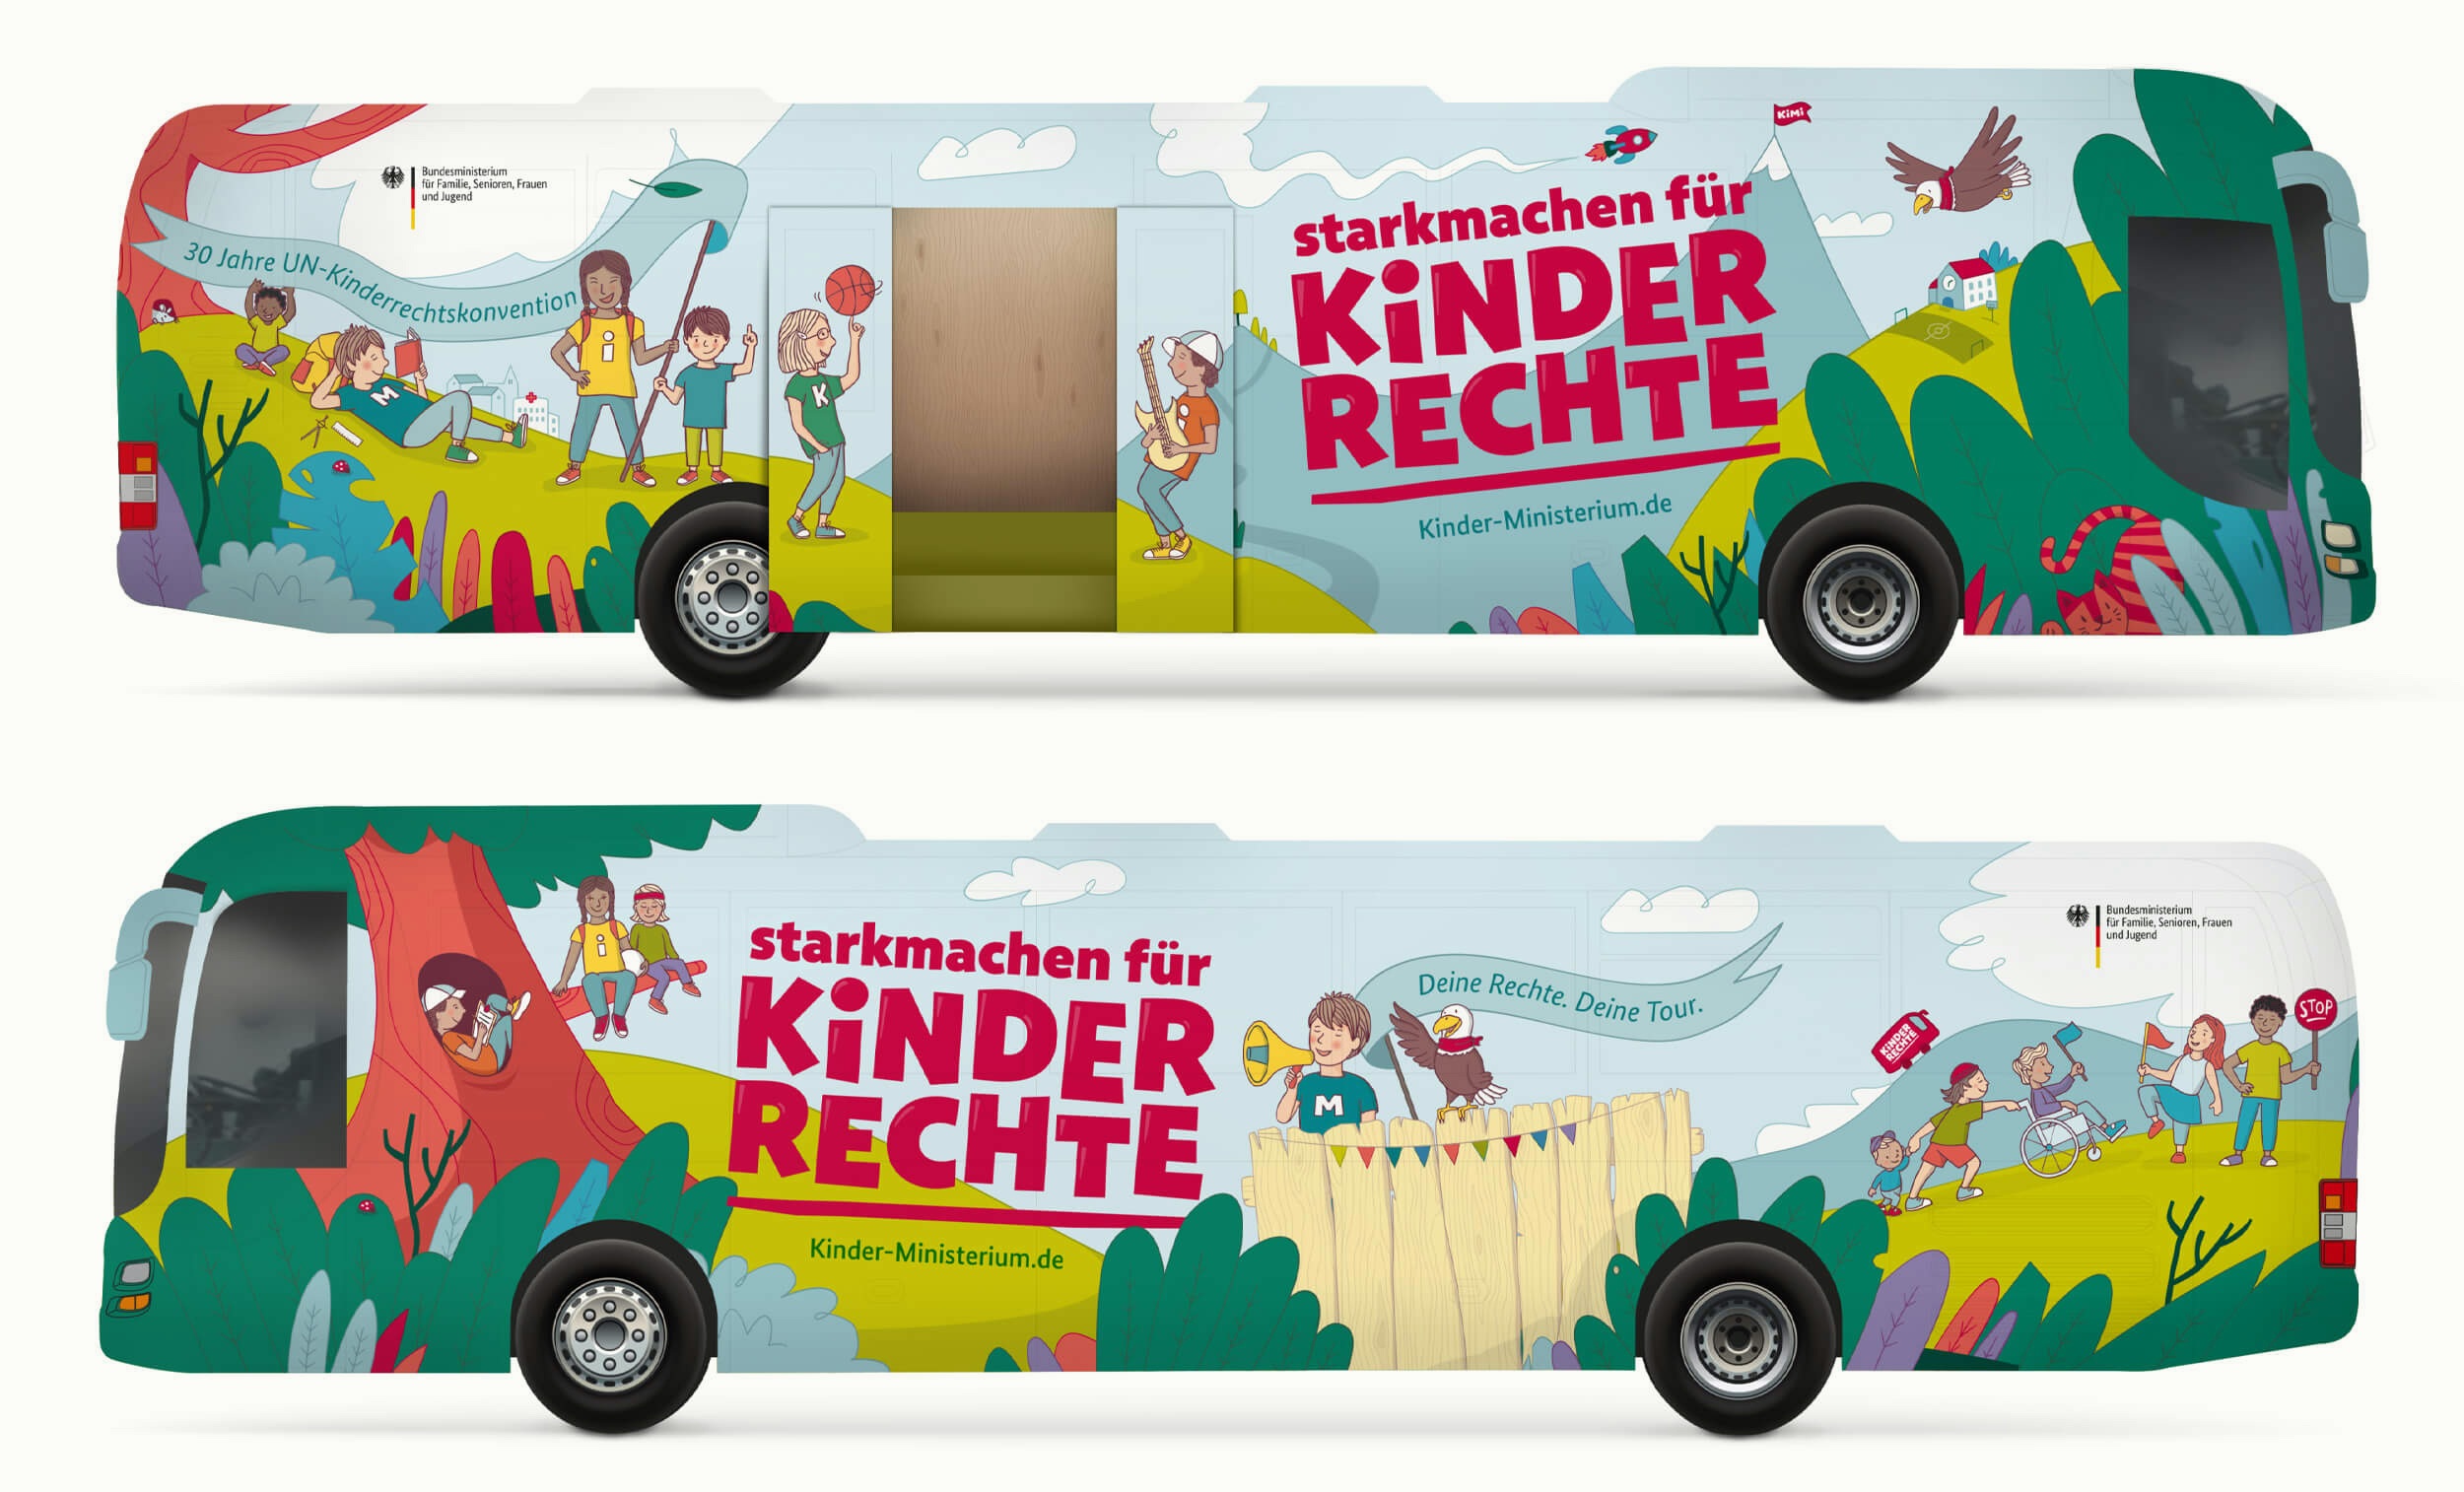 Das Bild zeigt die zwei Seiten eines langen Busses, designt im Look der Bustour f&uuml;r Kinderrechte.